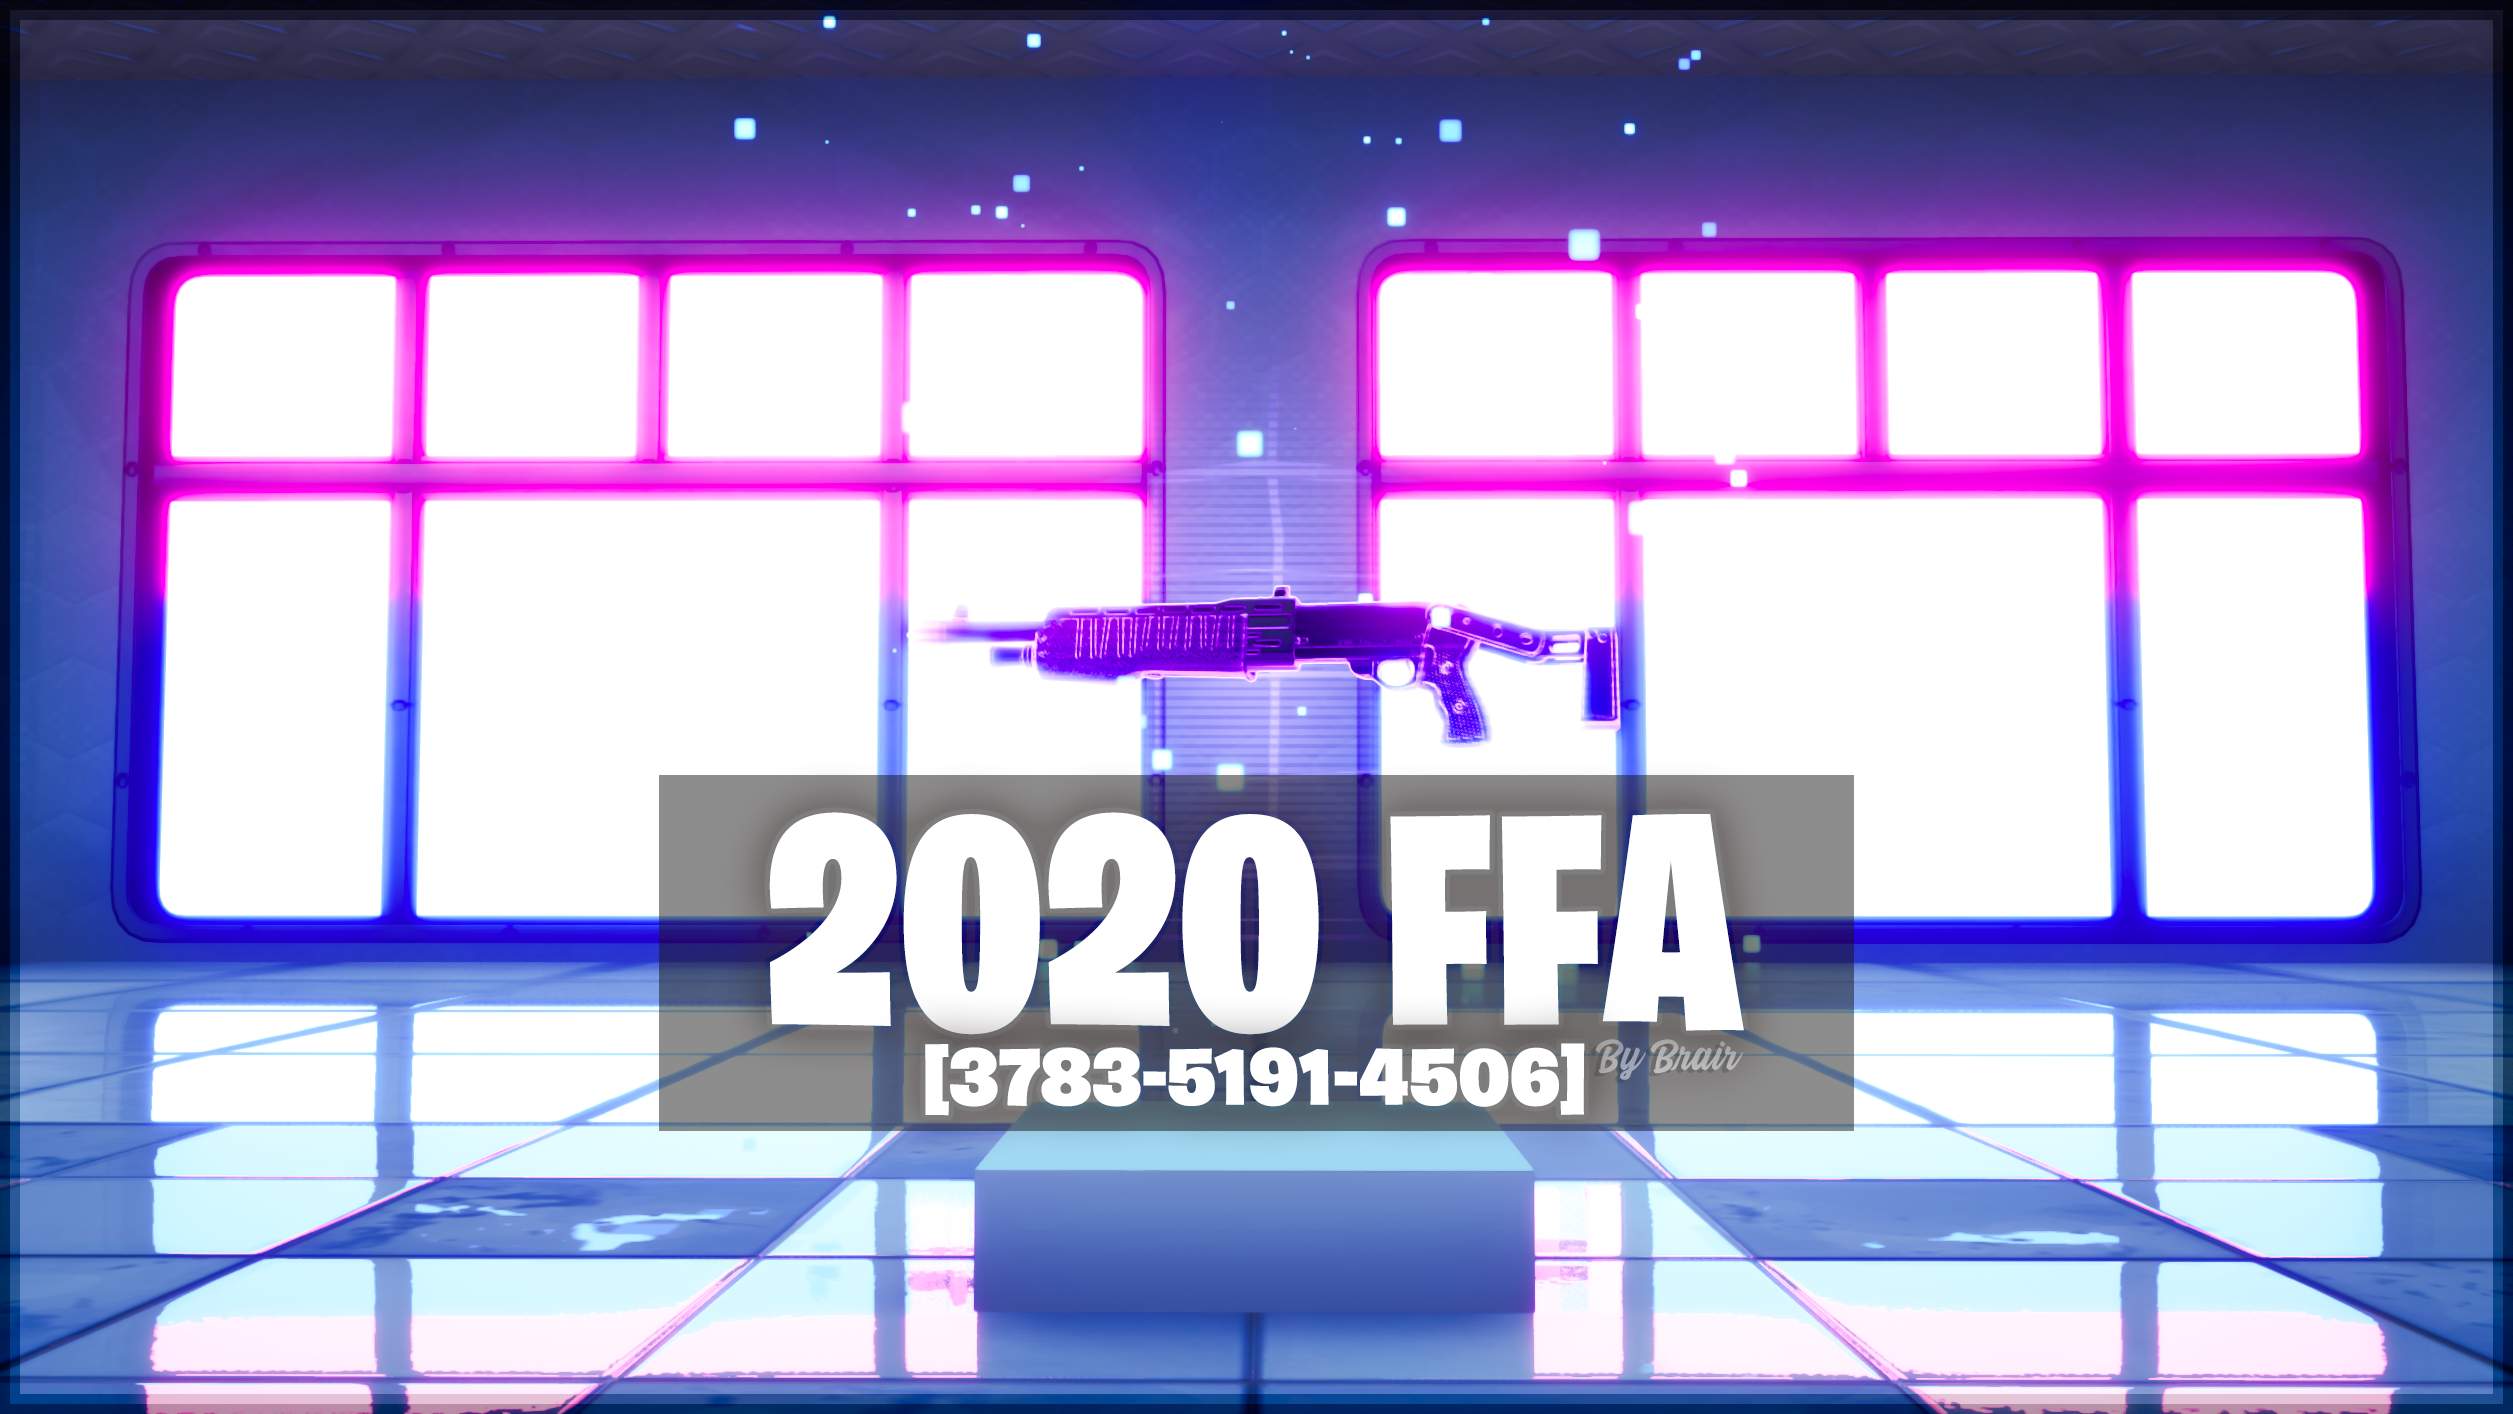 2020 FFA